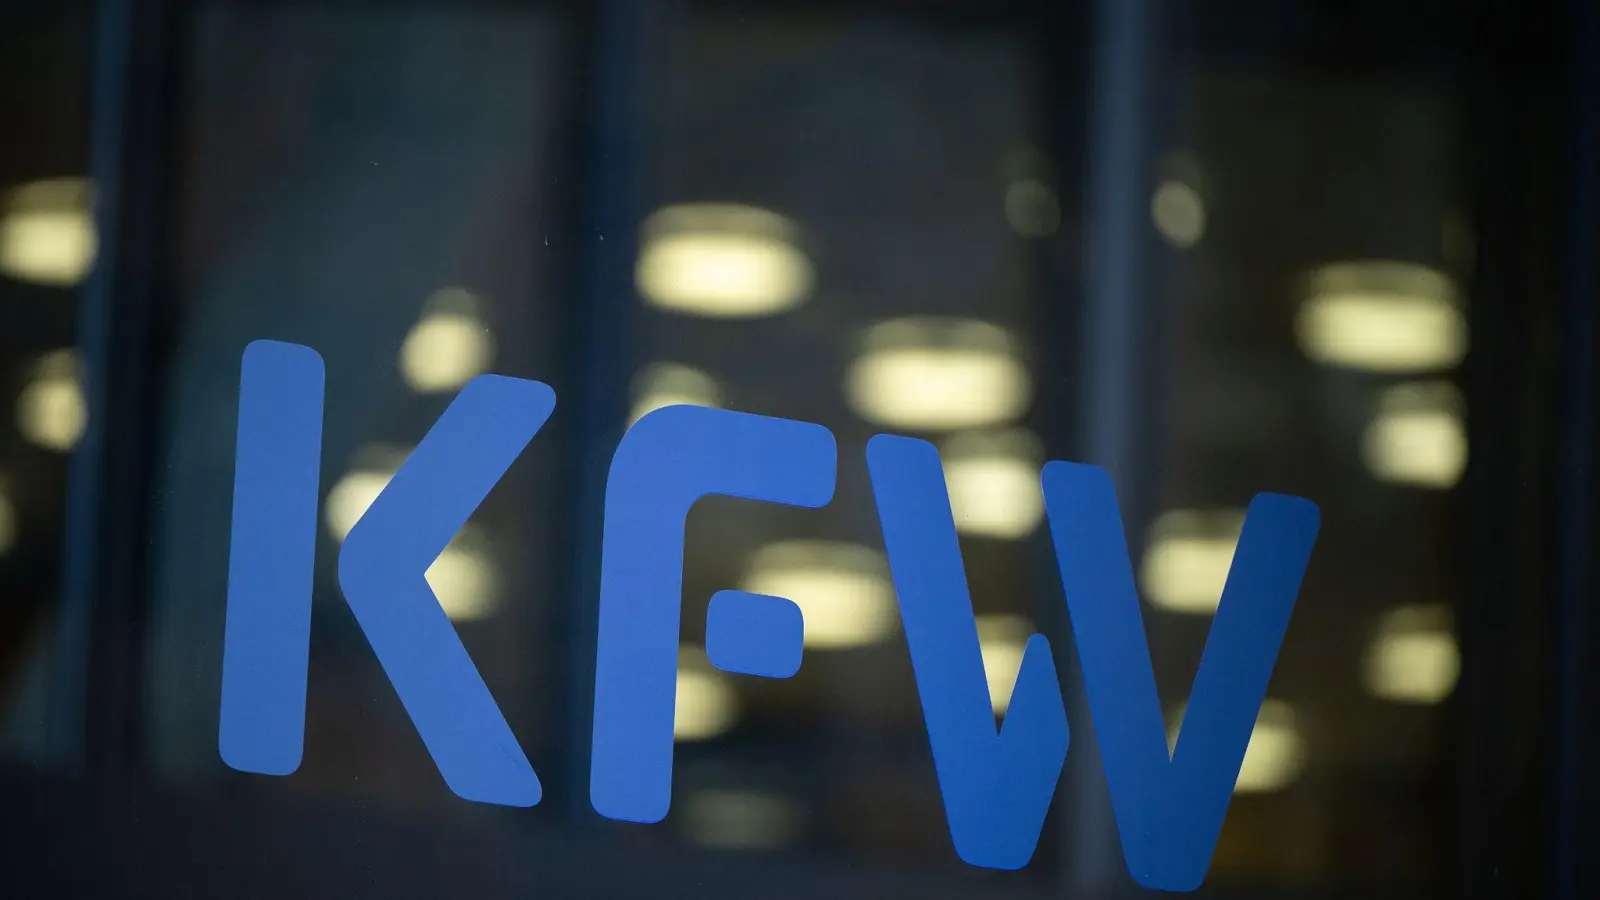 Die staatliche Förderbank KfW sieht gute Chancen für mehr Firmengründungen. (Foto: Sebastian Christoph Gollnow/dpa)